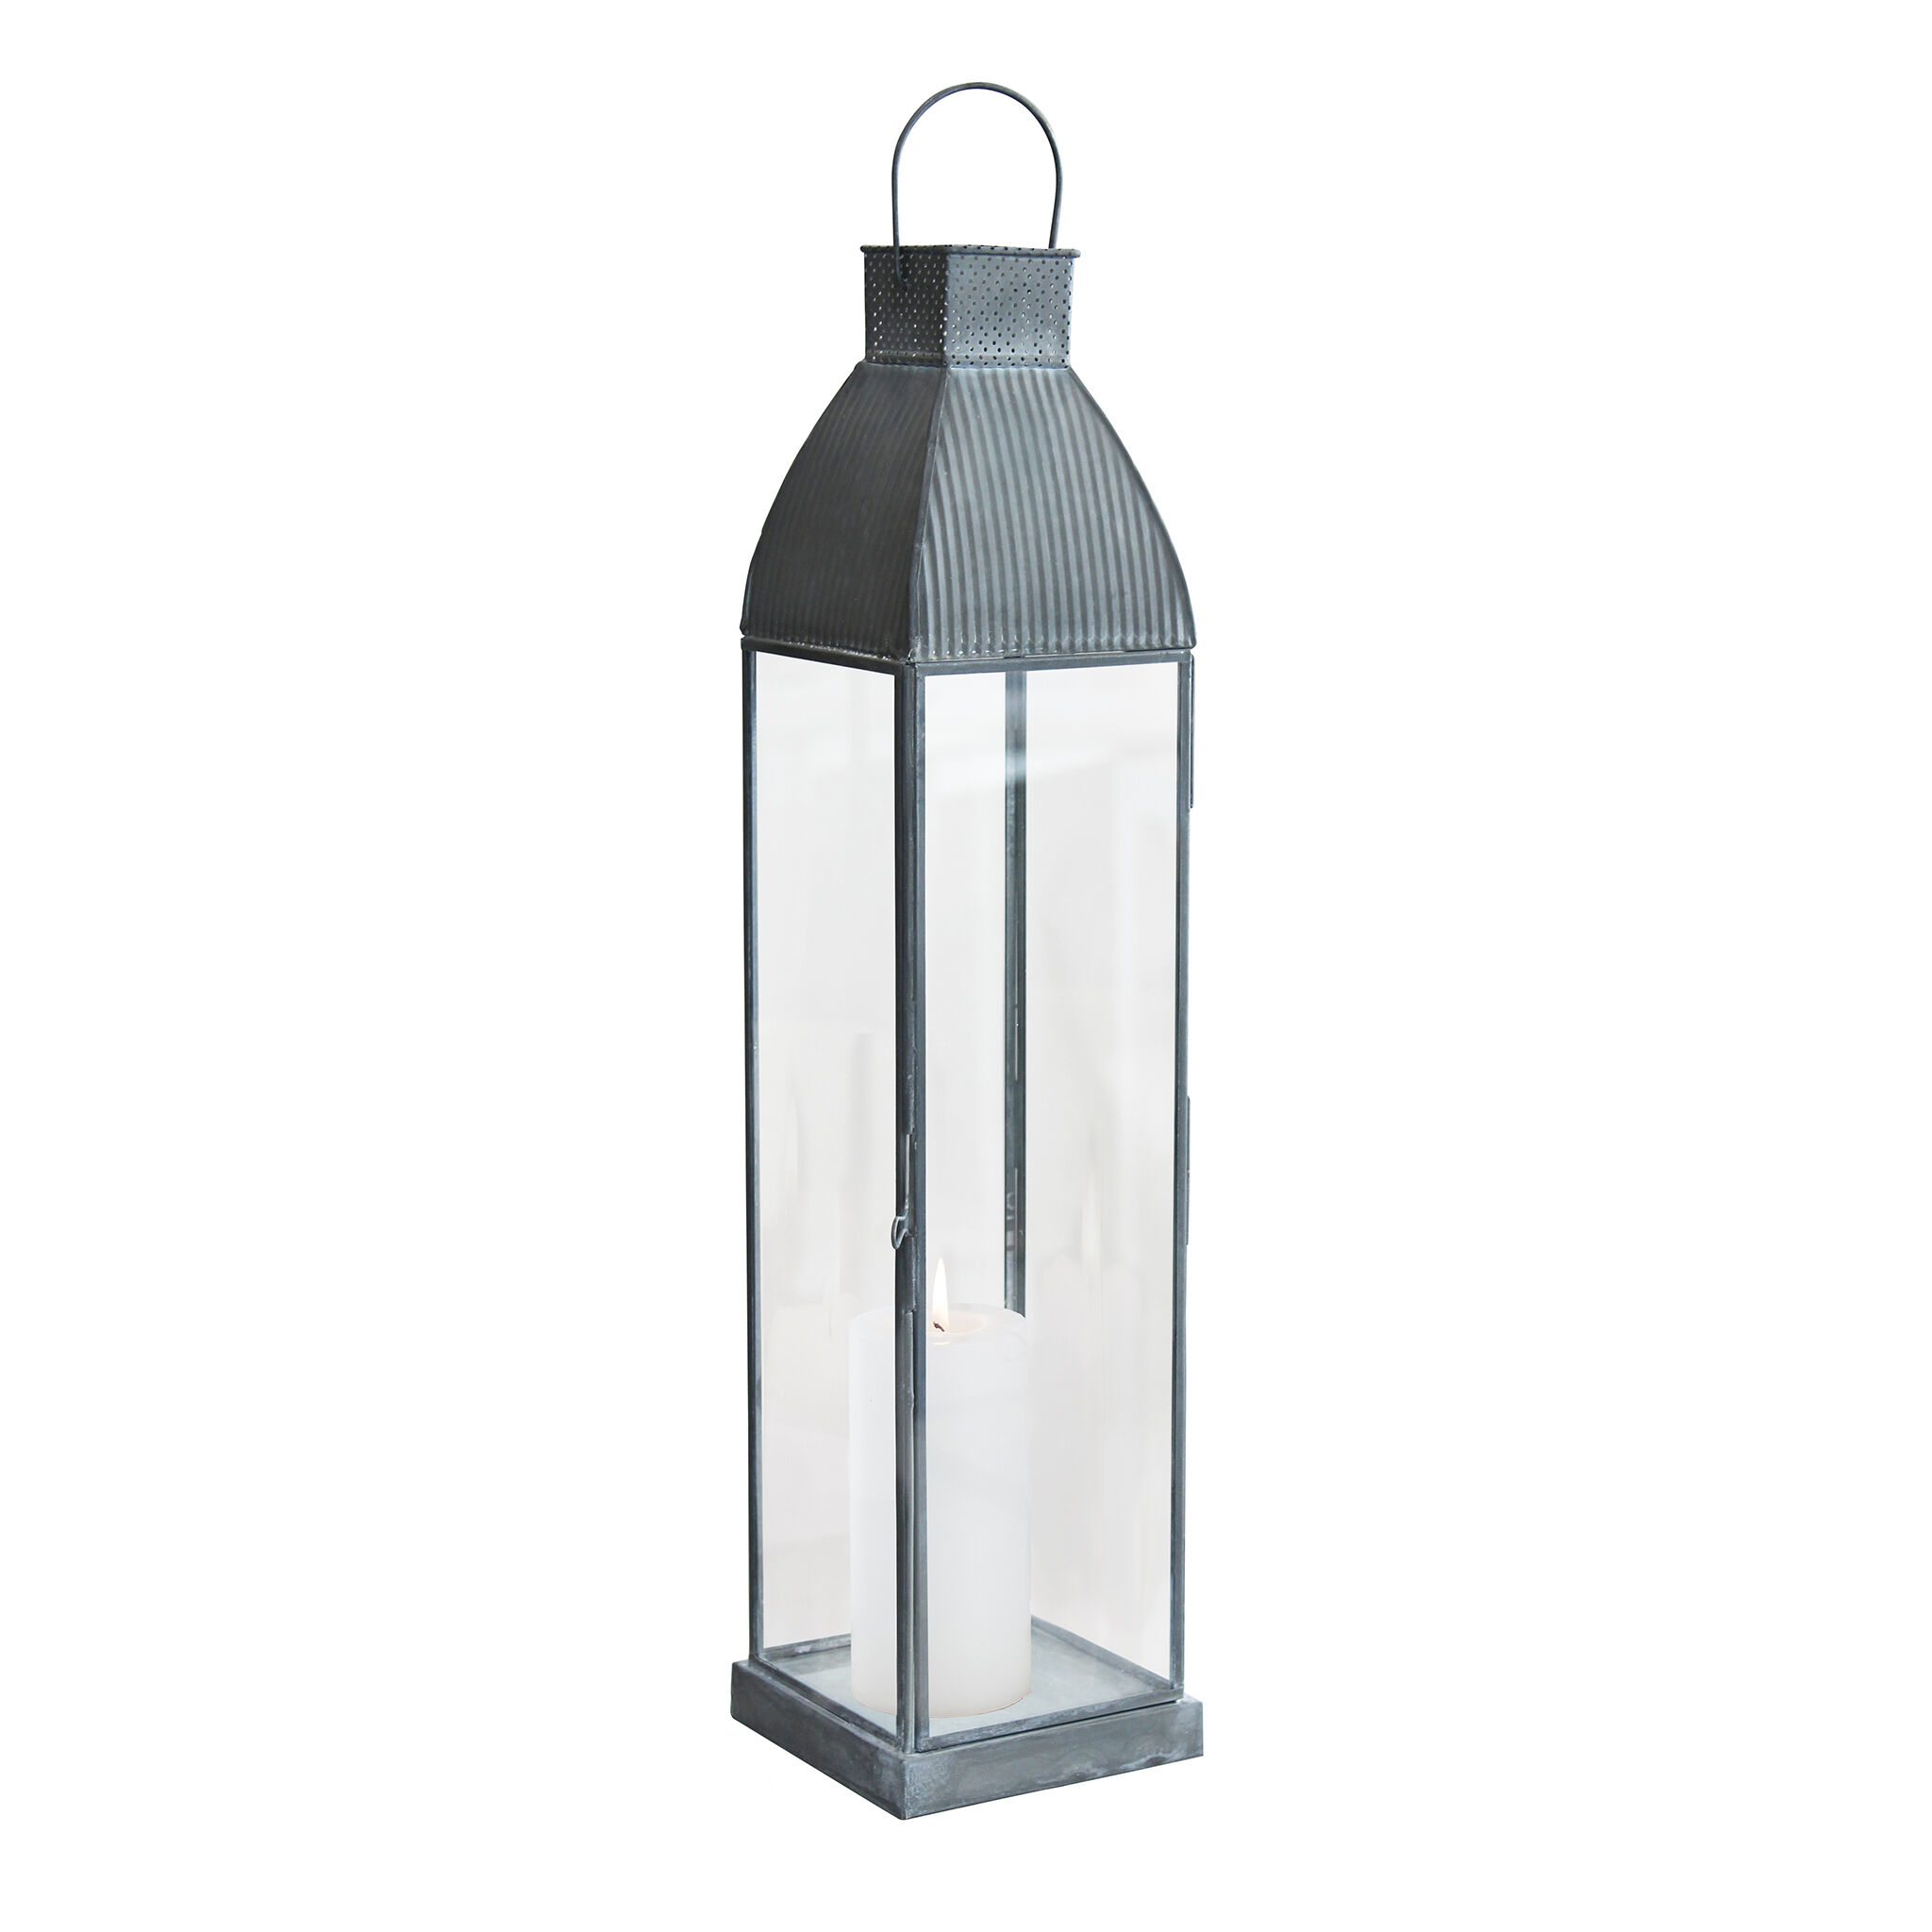 Milani Home lanterna in vetro di design moderno per giardino cm 12 x 12 x 52 h Grigio 12 x 52 x 12 cm